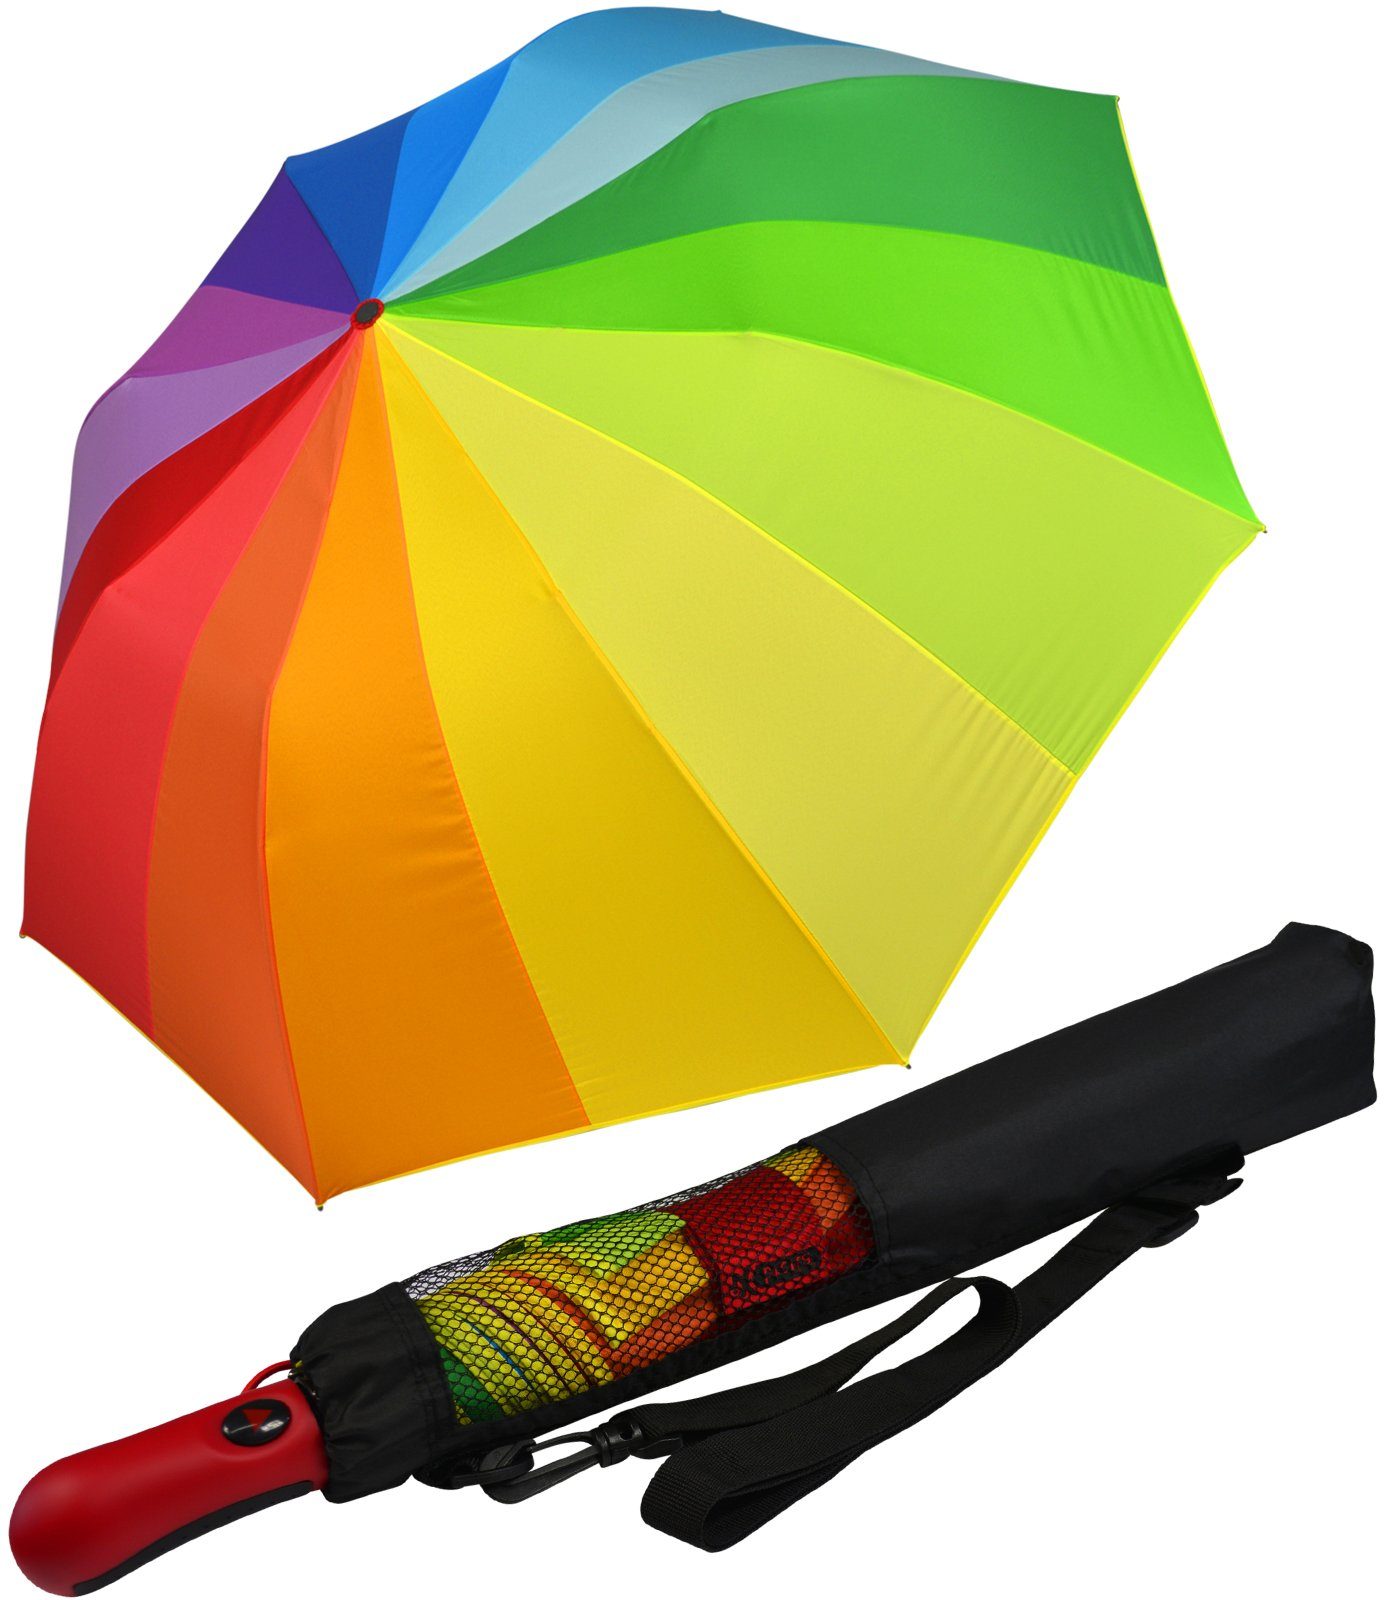 iX-brella Taschenregenschirm Trekking Golf-Taschenschirm XXL mit Umhängetasche, mit riesigem 124cm Dach-Durchmesser